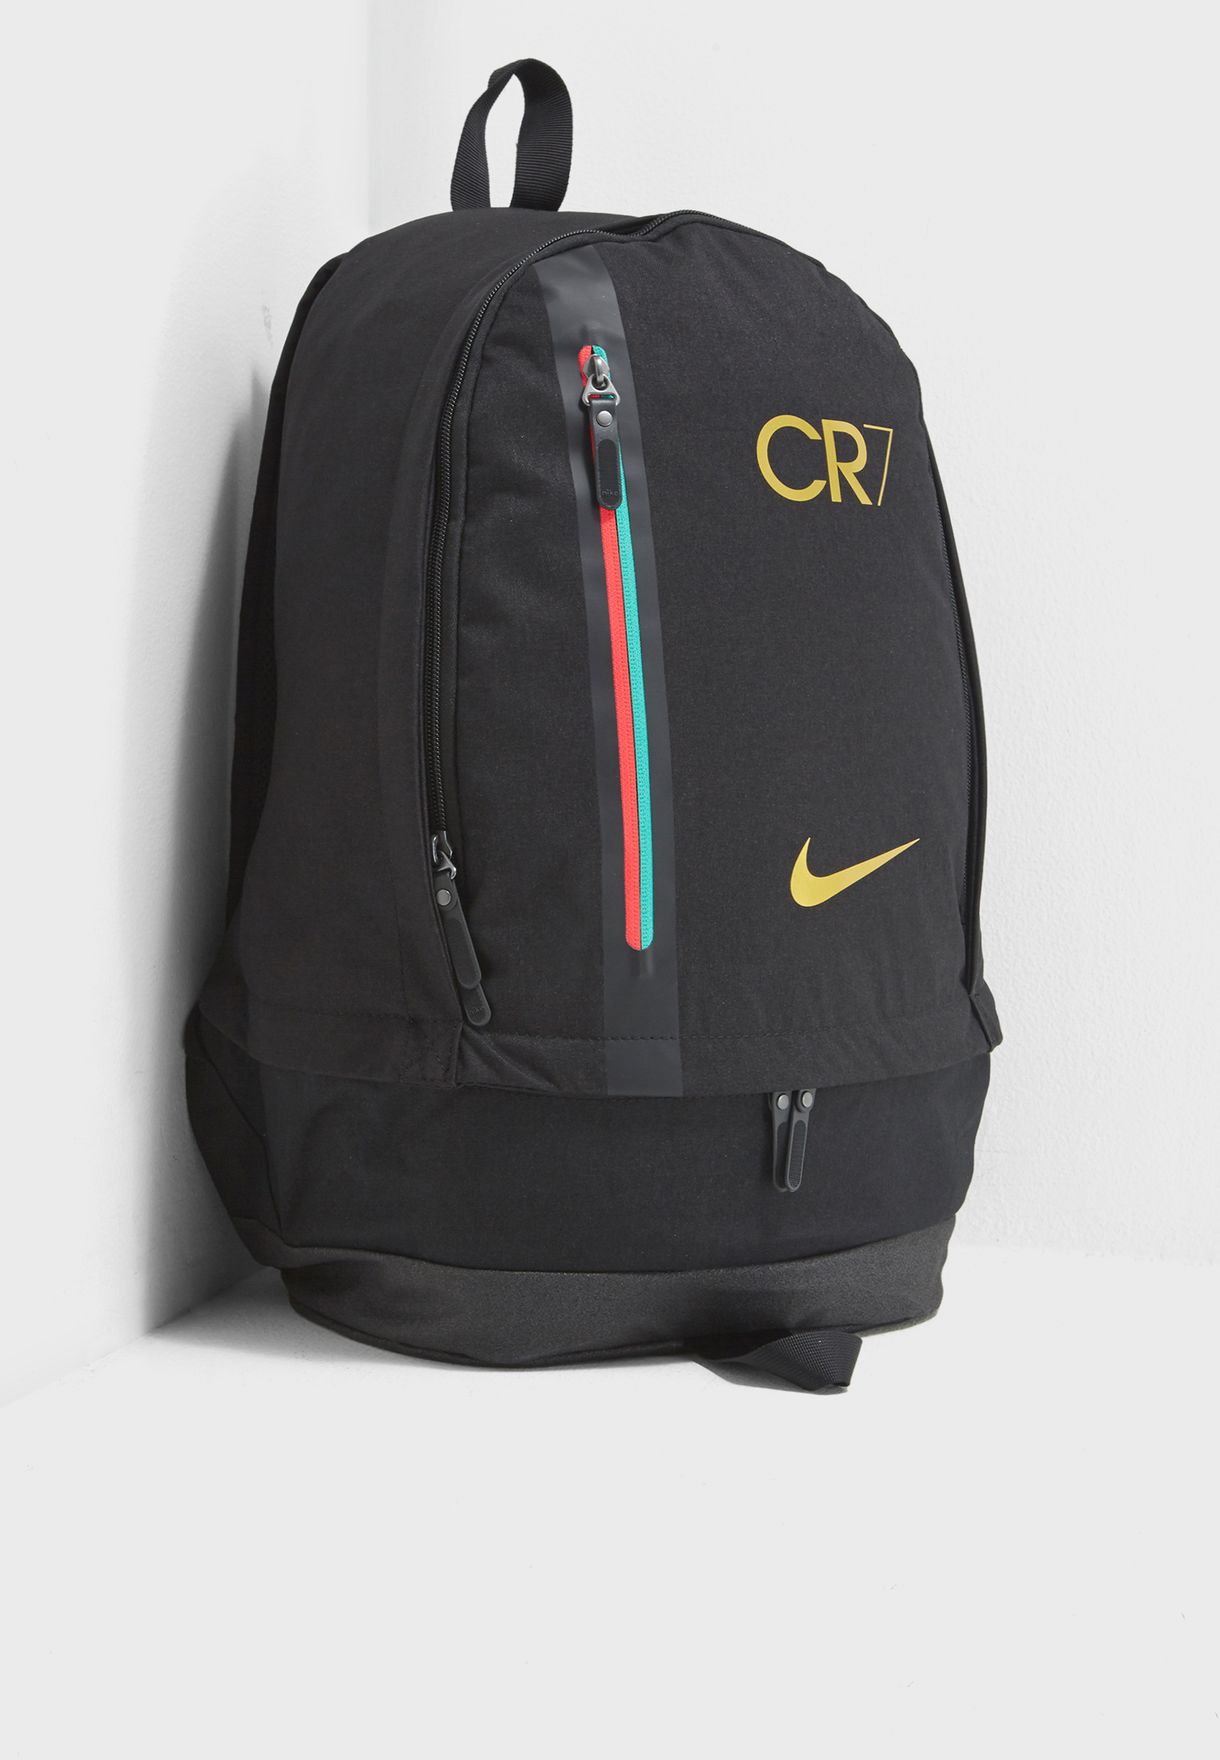 Nike CR7 Cheyenne Backpack Buy Online in Belize. nike .